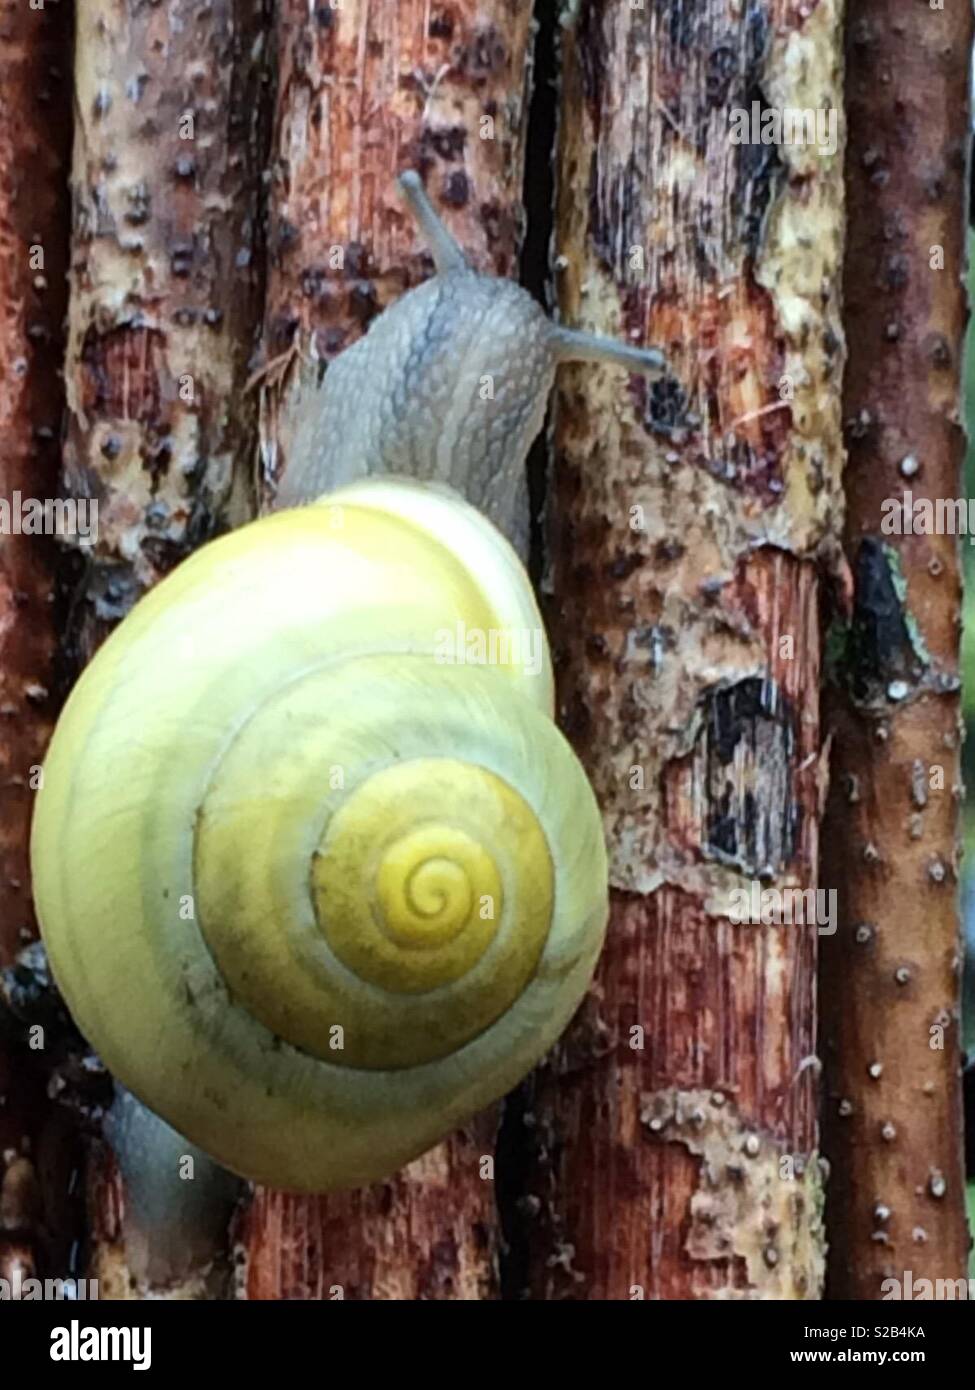 Globular drop snail Stock Photo